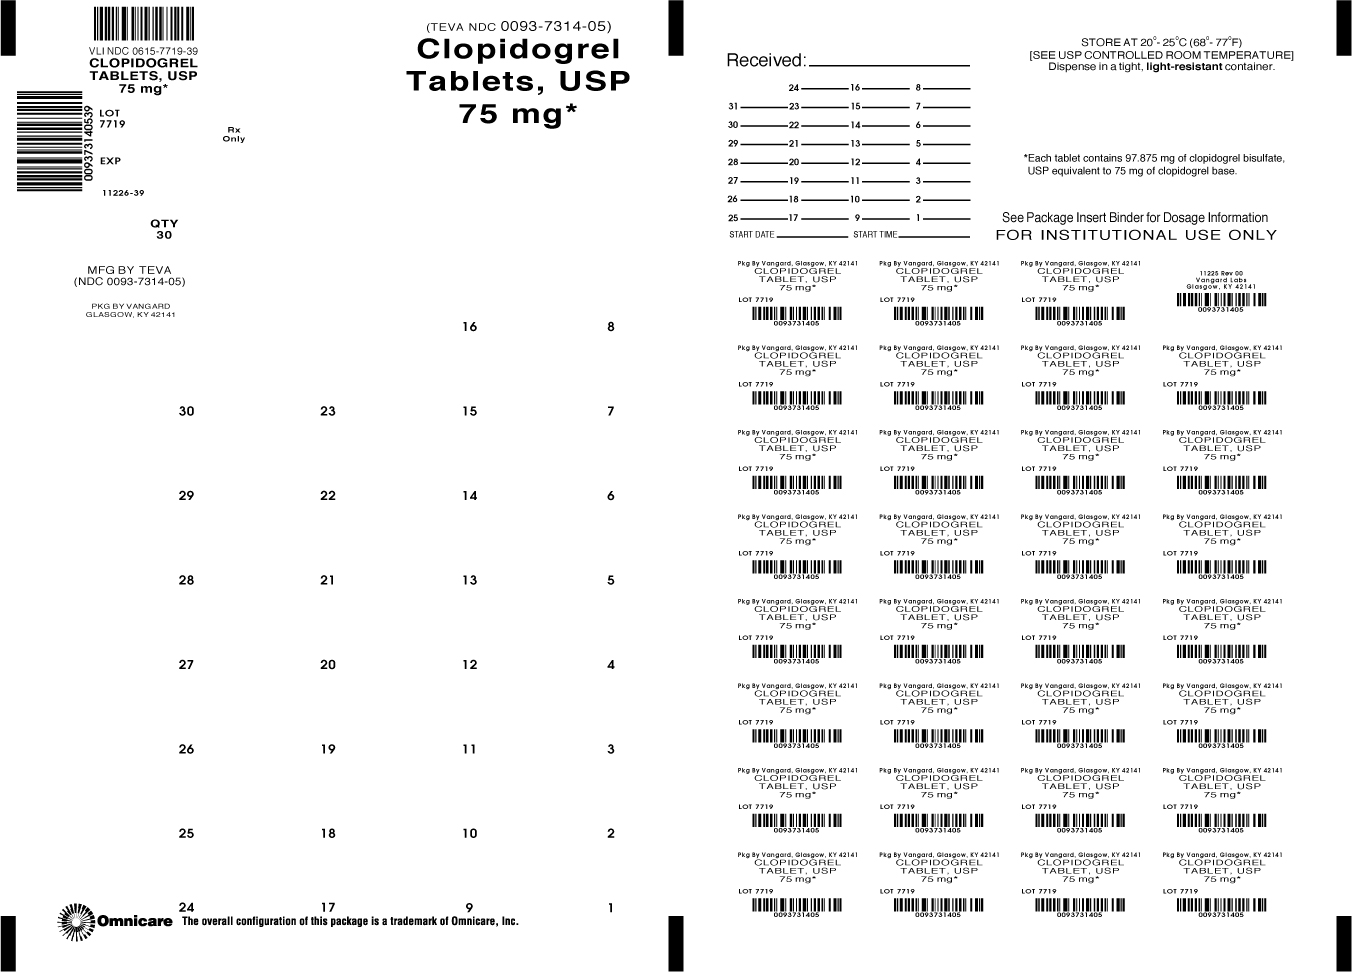 Principal Panel Display- Clopidogrel Tablets, USP 75mg